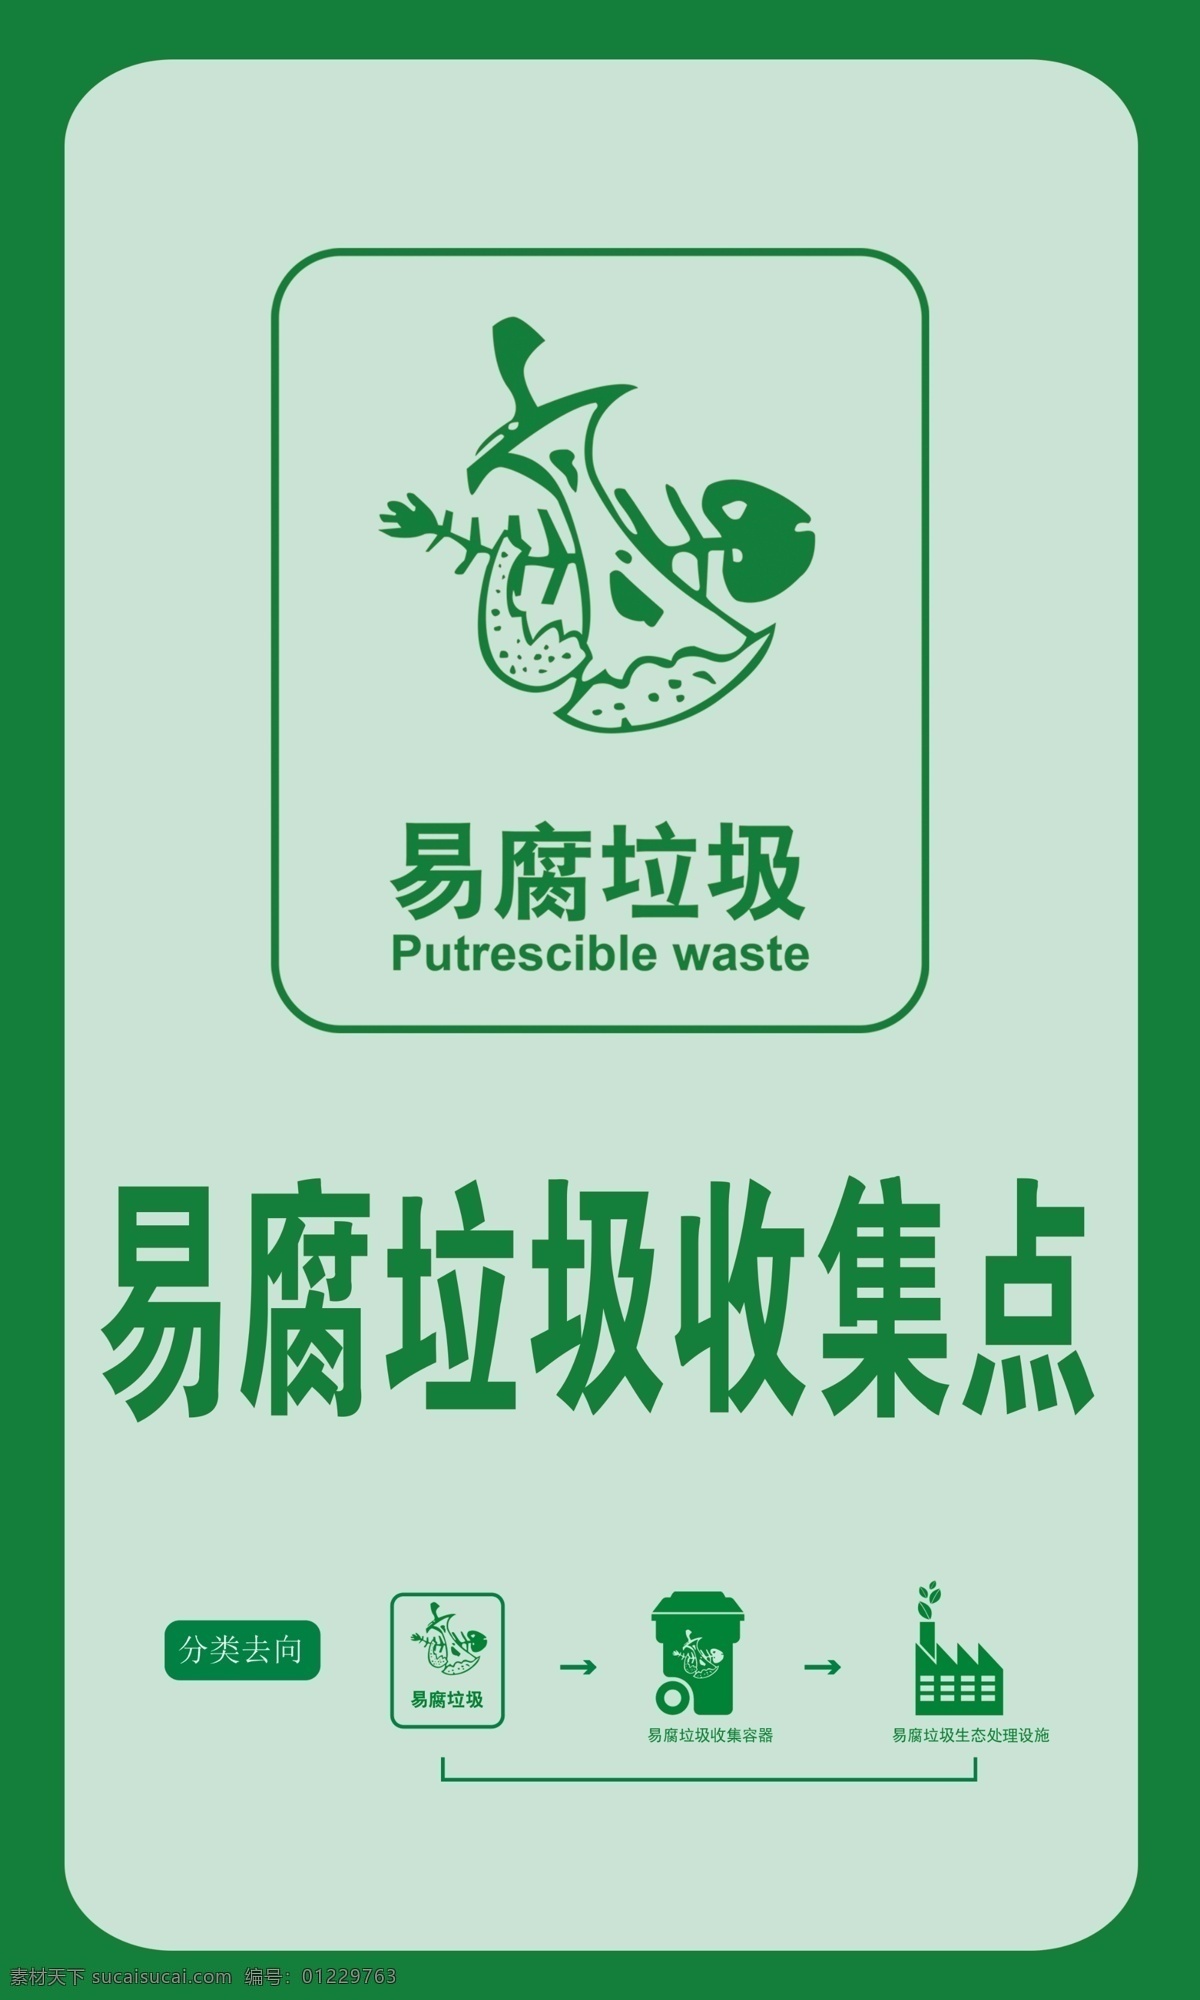 垃圾分类 易腐 垃圾 收集 点 海报 易腐垃圾 收集点 海报宣传 展板 绿色背景 桶标识 可回收垃圾 有害垃圾 其他垃圾 标识牌